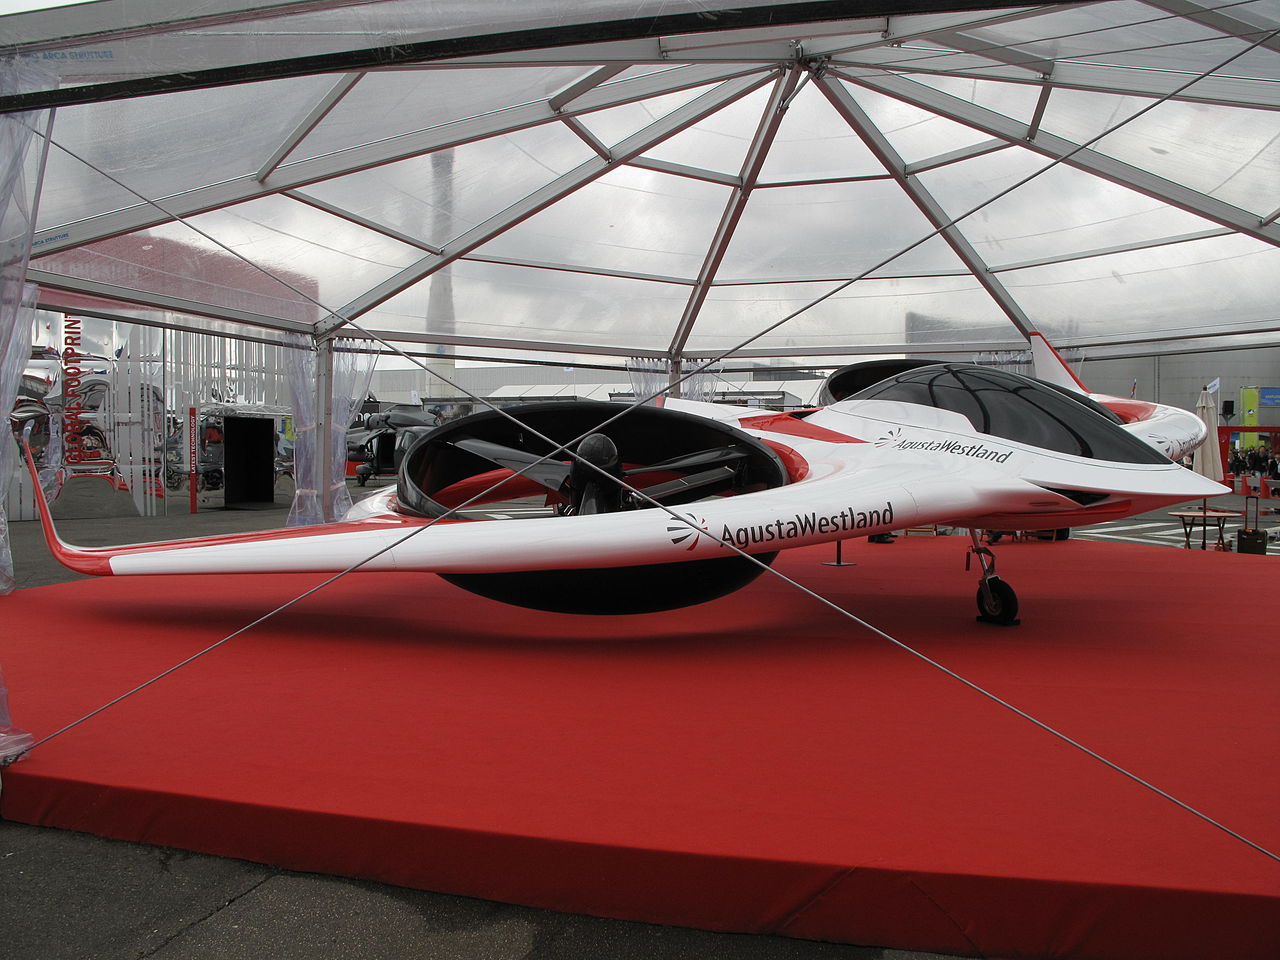 1280px-AgustaWestland_Project_Zero_at_Paris_Air_Show_2013_2.jpg